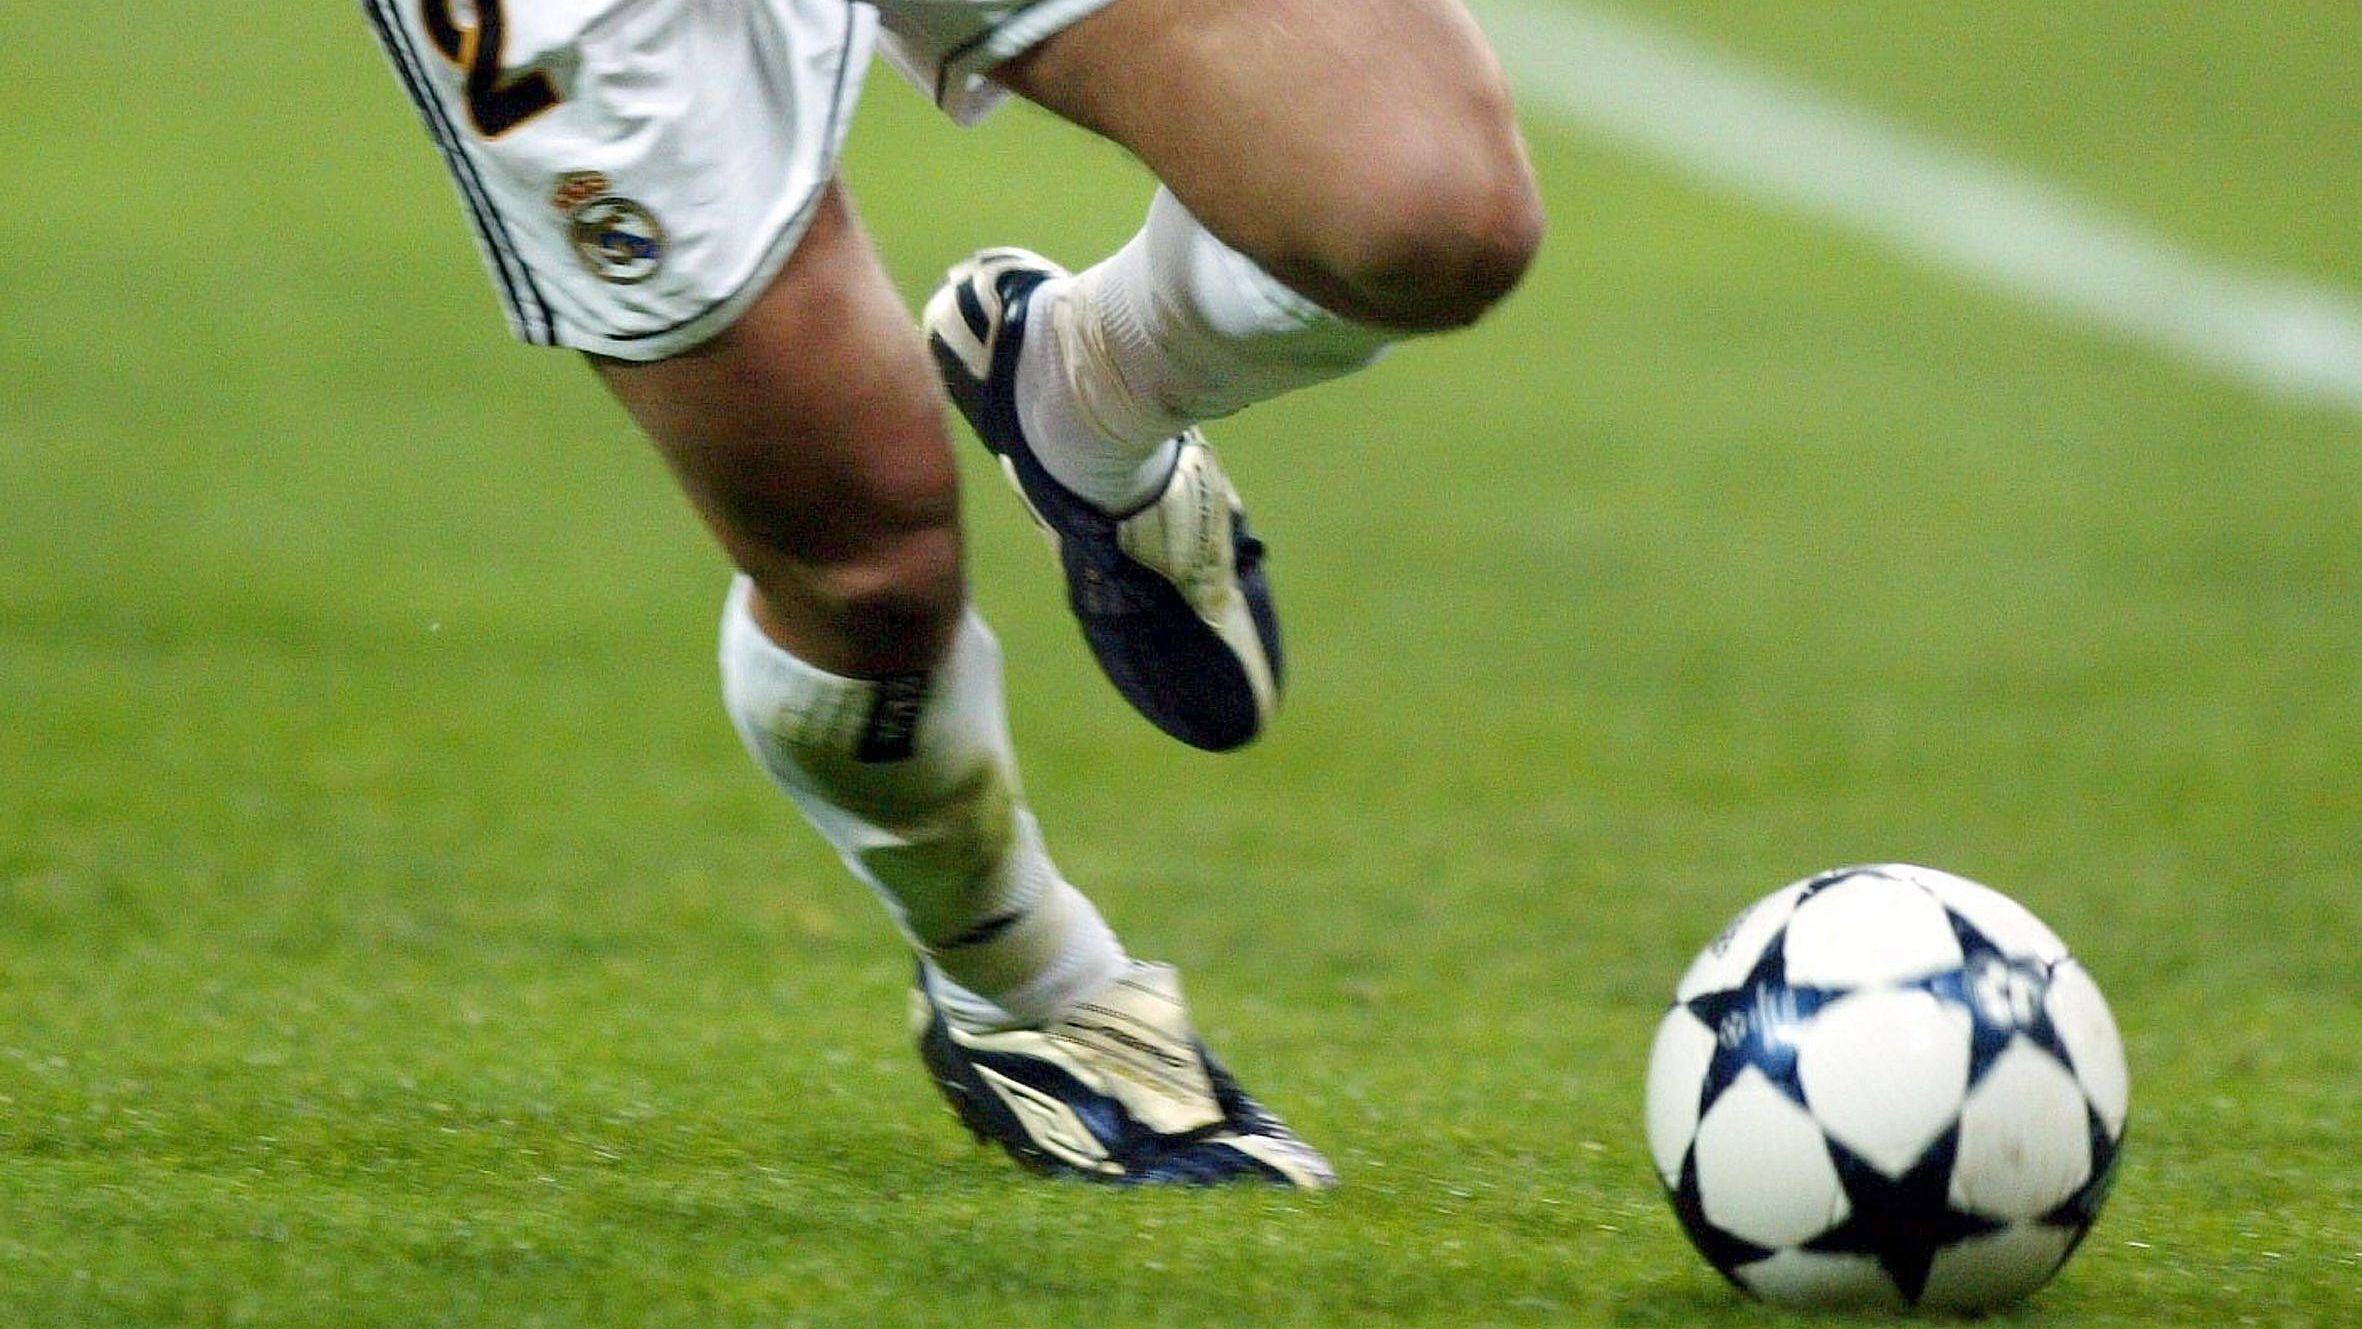 <strong>Saison 2003/04</strong><br>In dieser Saison war Adidas weniger kreativ - der "Adidas Finale 3" sieht fast so aus wie der Ball aus dem Vorjahr. Beim Finale in Gelsenkirchen kam der gleiche Spielball zum Einsatz. Lediglich die Beschriftung "AufSchalke" war neu.